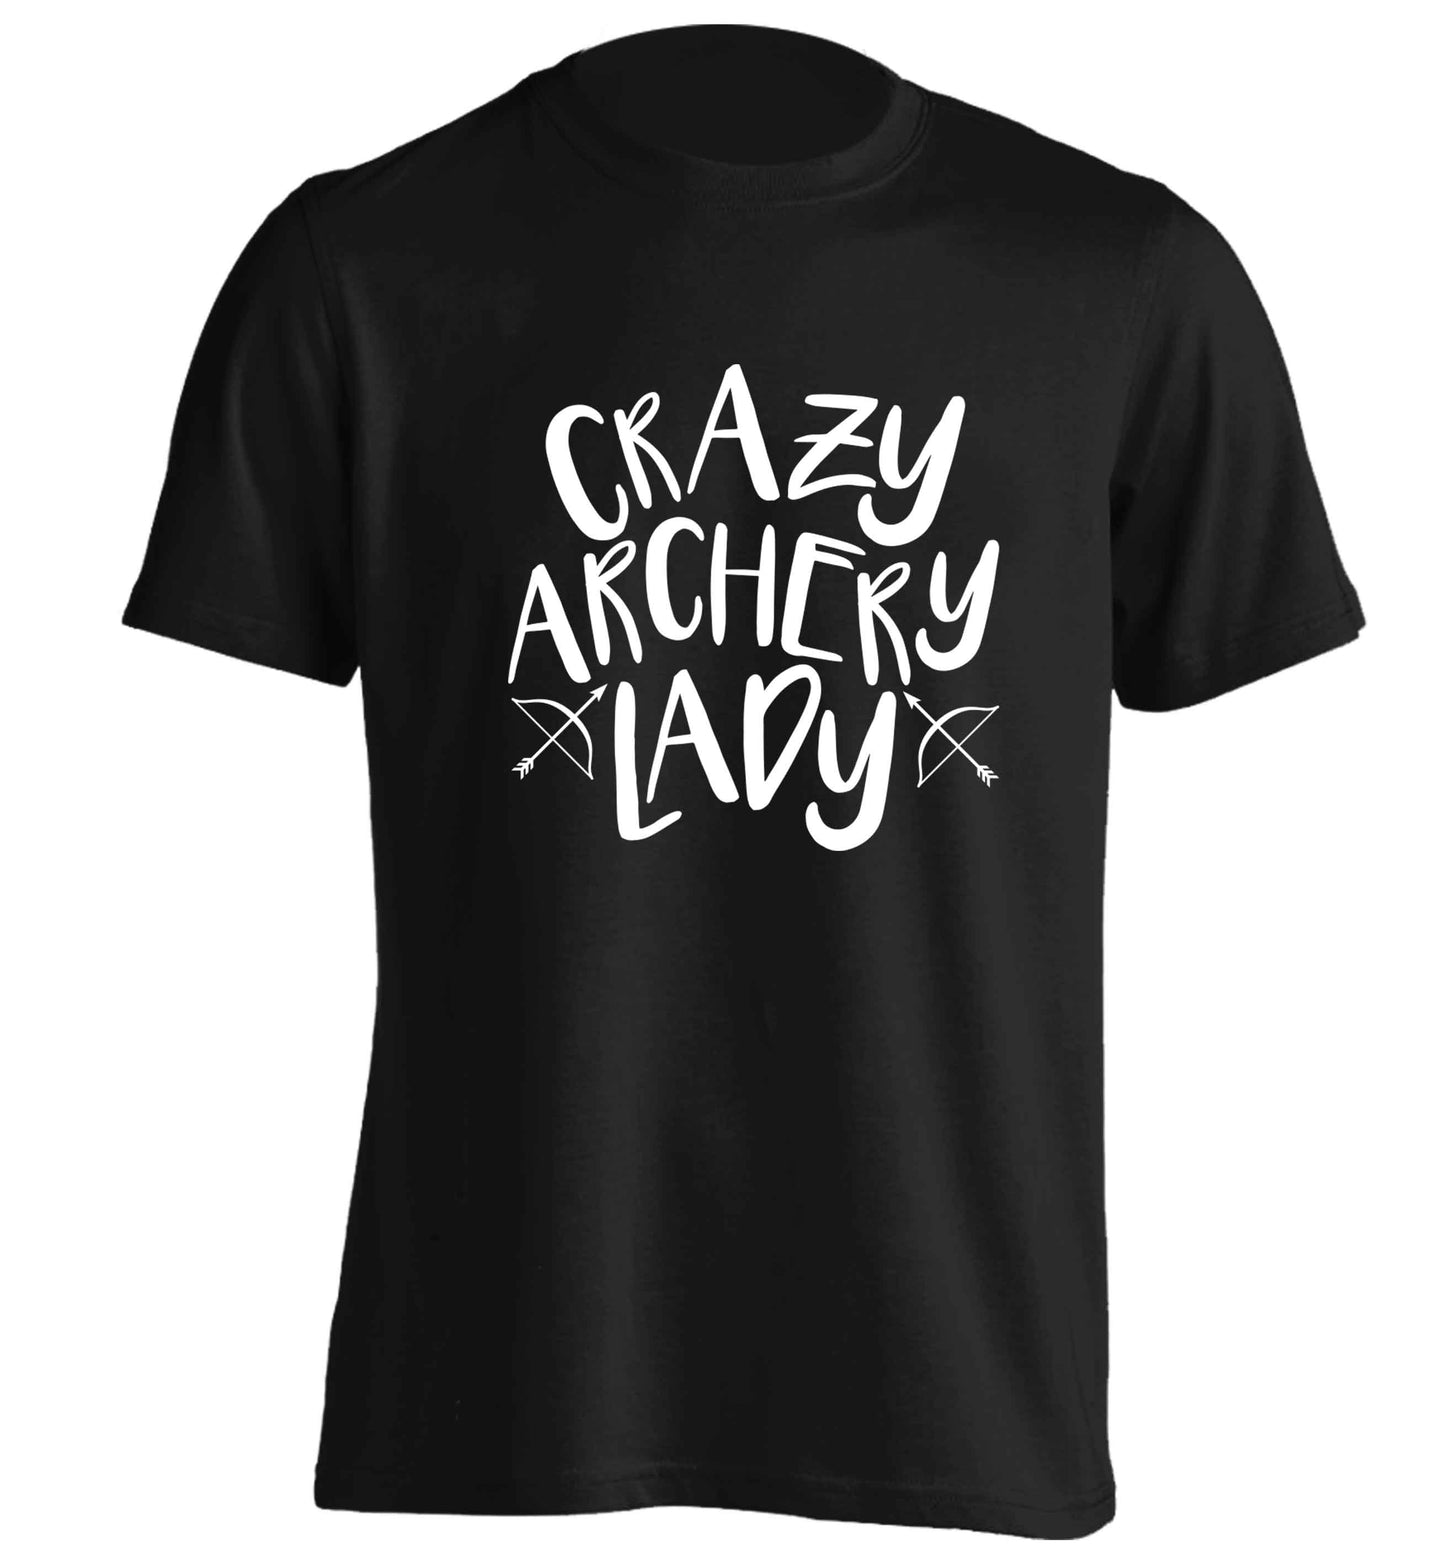 Crazy archery lady adults unisex black Tshirt 2XL